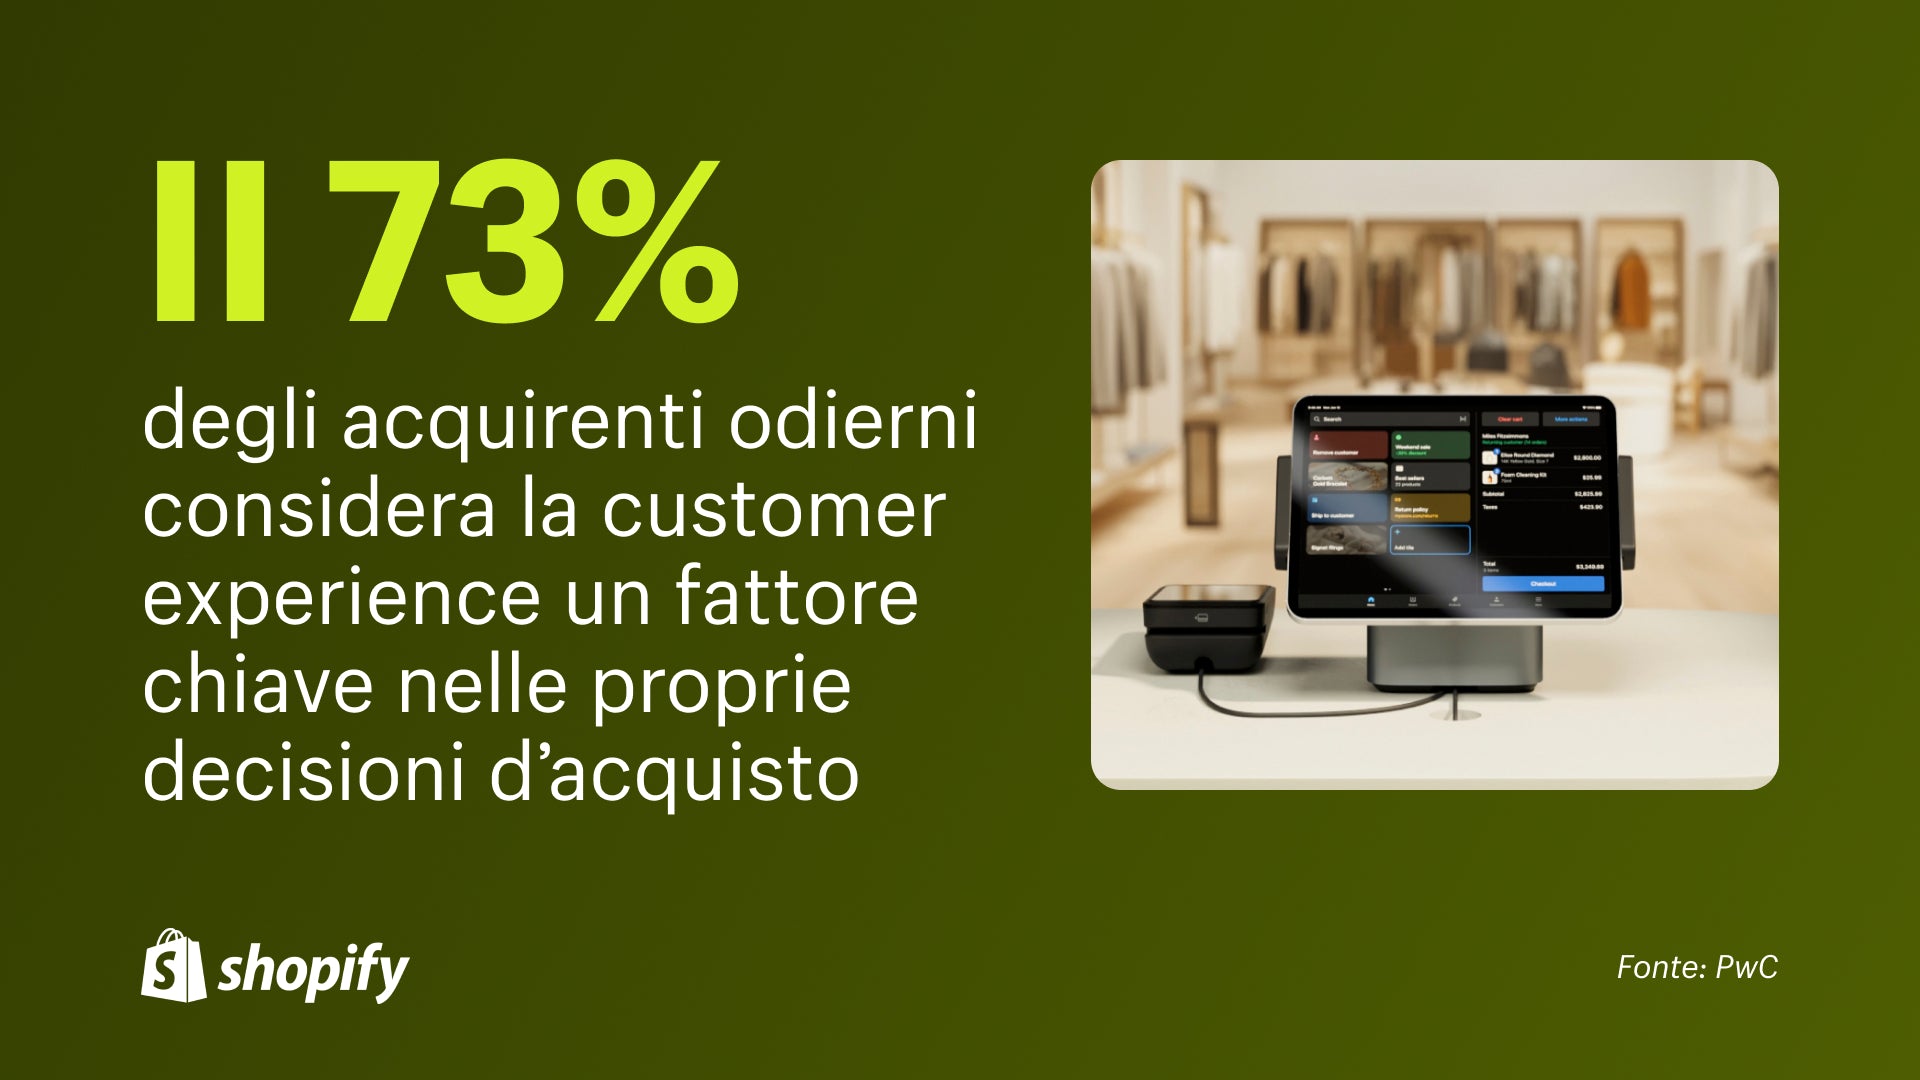 Shopify POS su un iPad collegato a un lettore di carte di credito con un fatto che afferma che il 73% degli acquirenti di oggi considera l'esperienza del cliente un fattore chiave nelle loro decisioni di acquisto